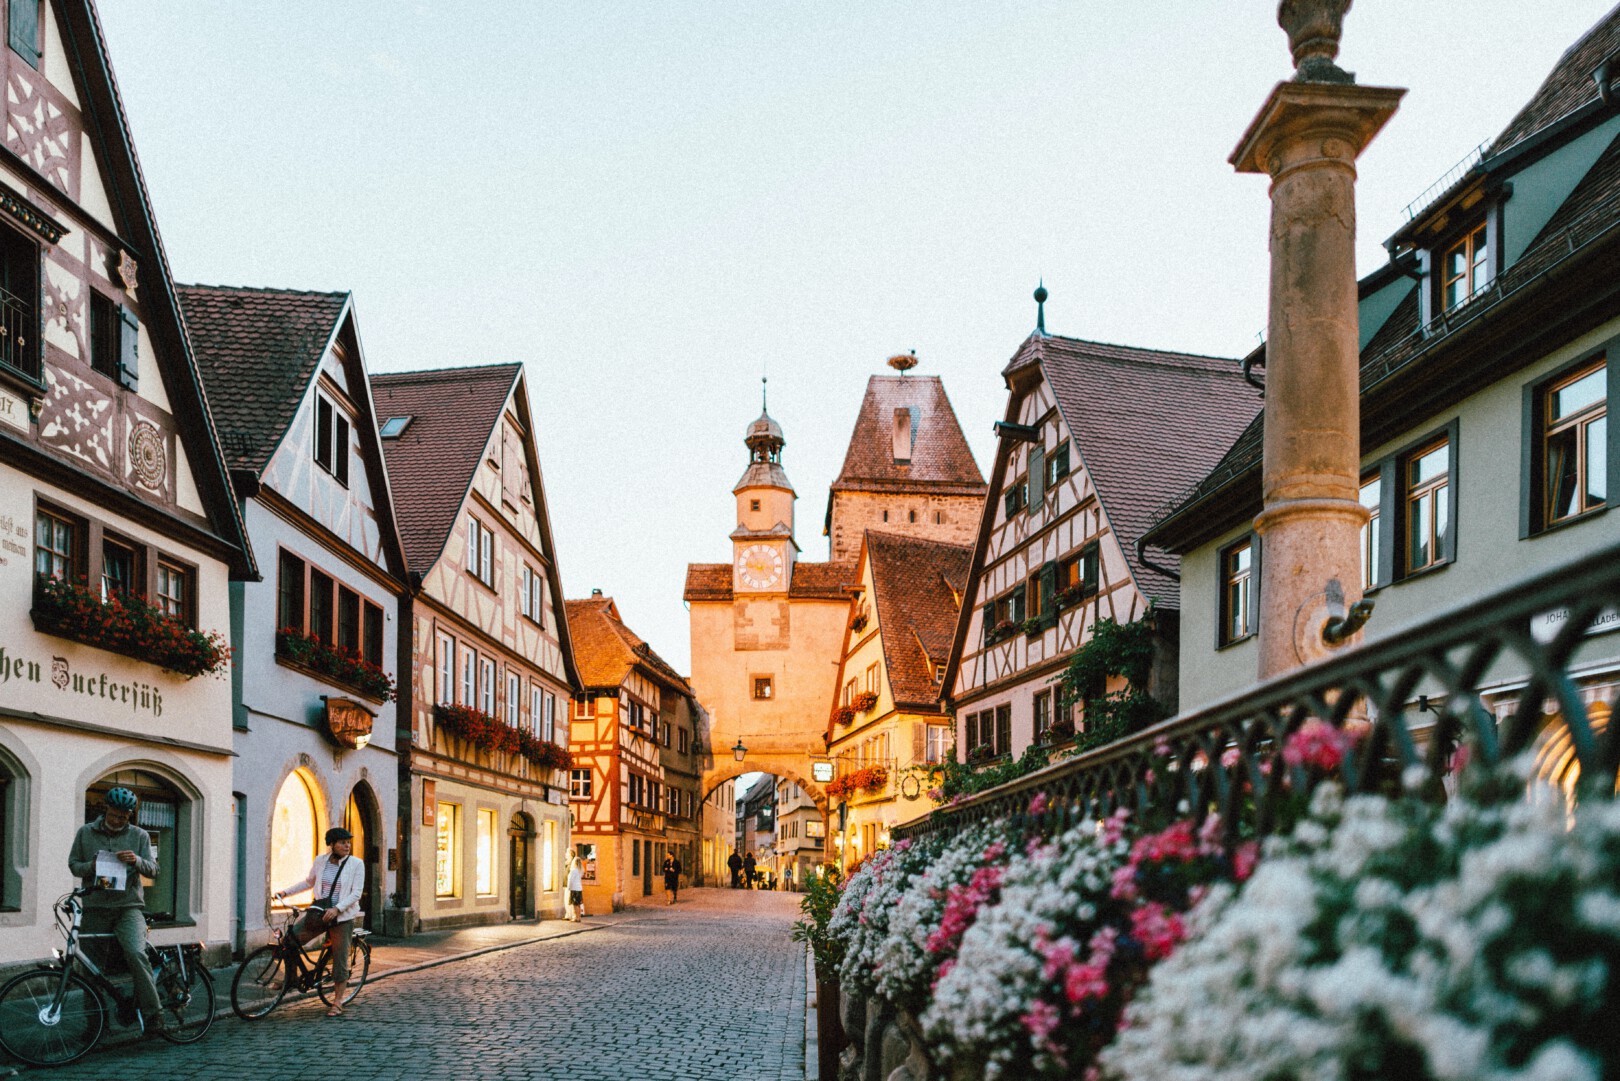 roman kraft g gwdpsCVAY unsplash - Dit zijn de 12 leukste dorpjes en kleine stadjes in Duitsland om te bezoeken!